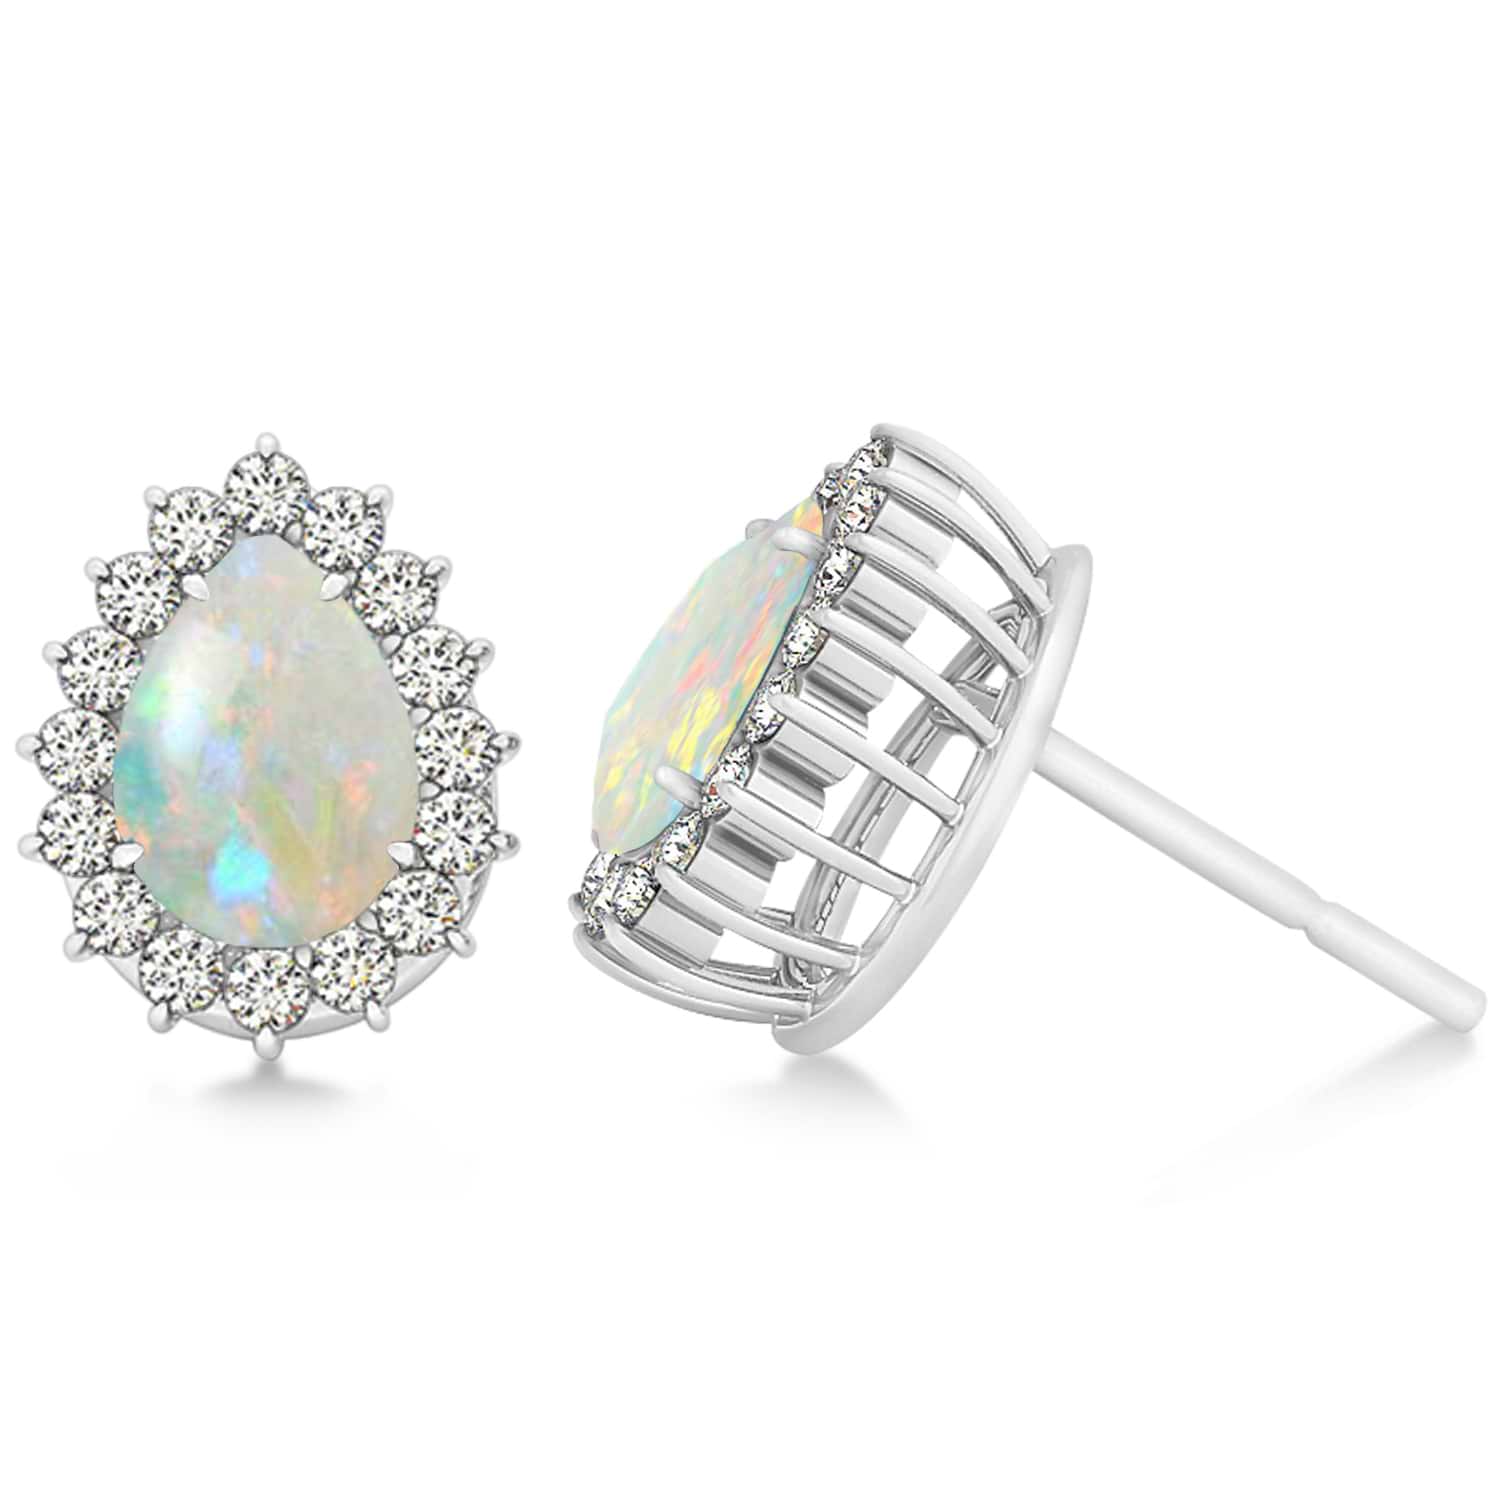 Pear Cut Diamond & Opal Halo Earrings 14k White Gold (0.69ct)